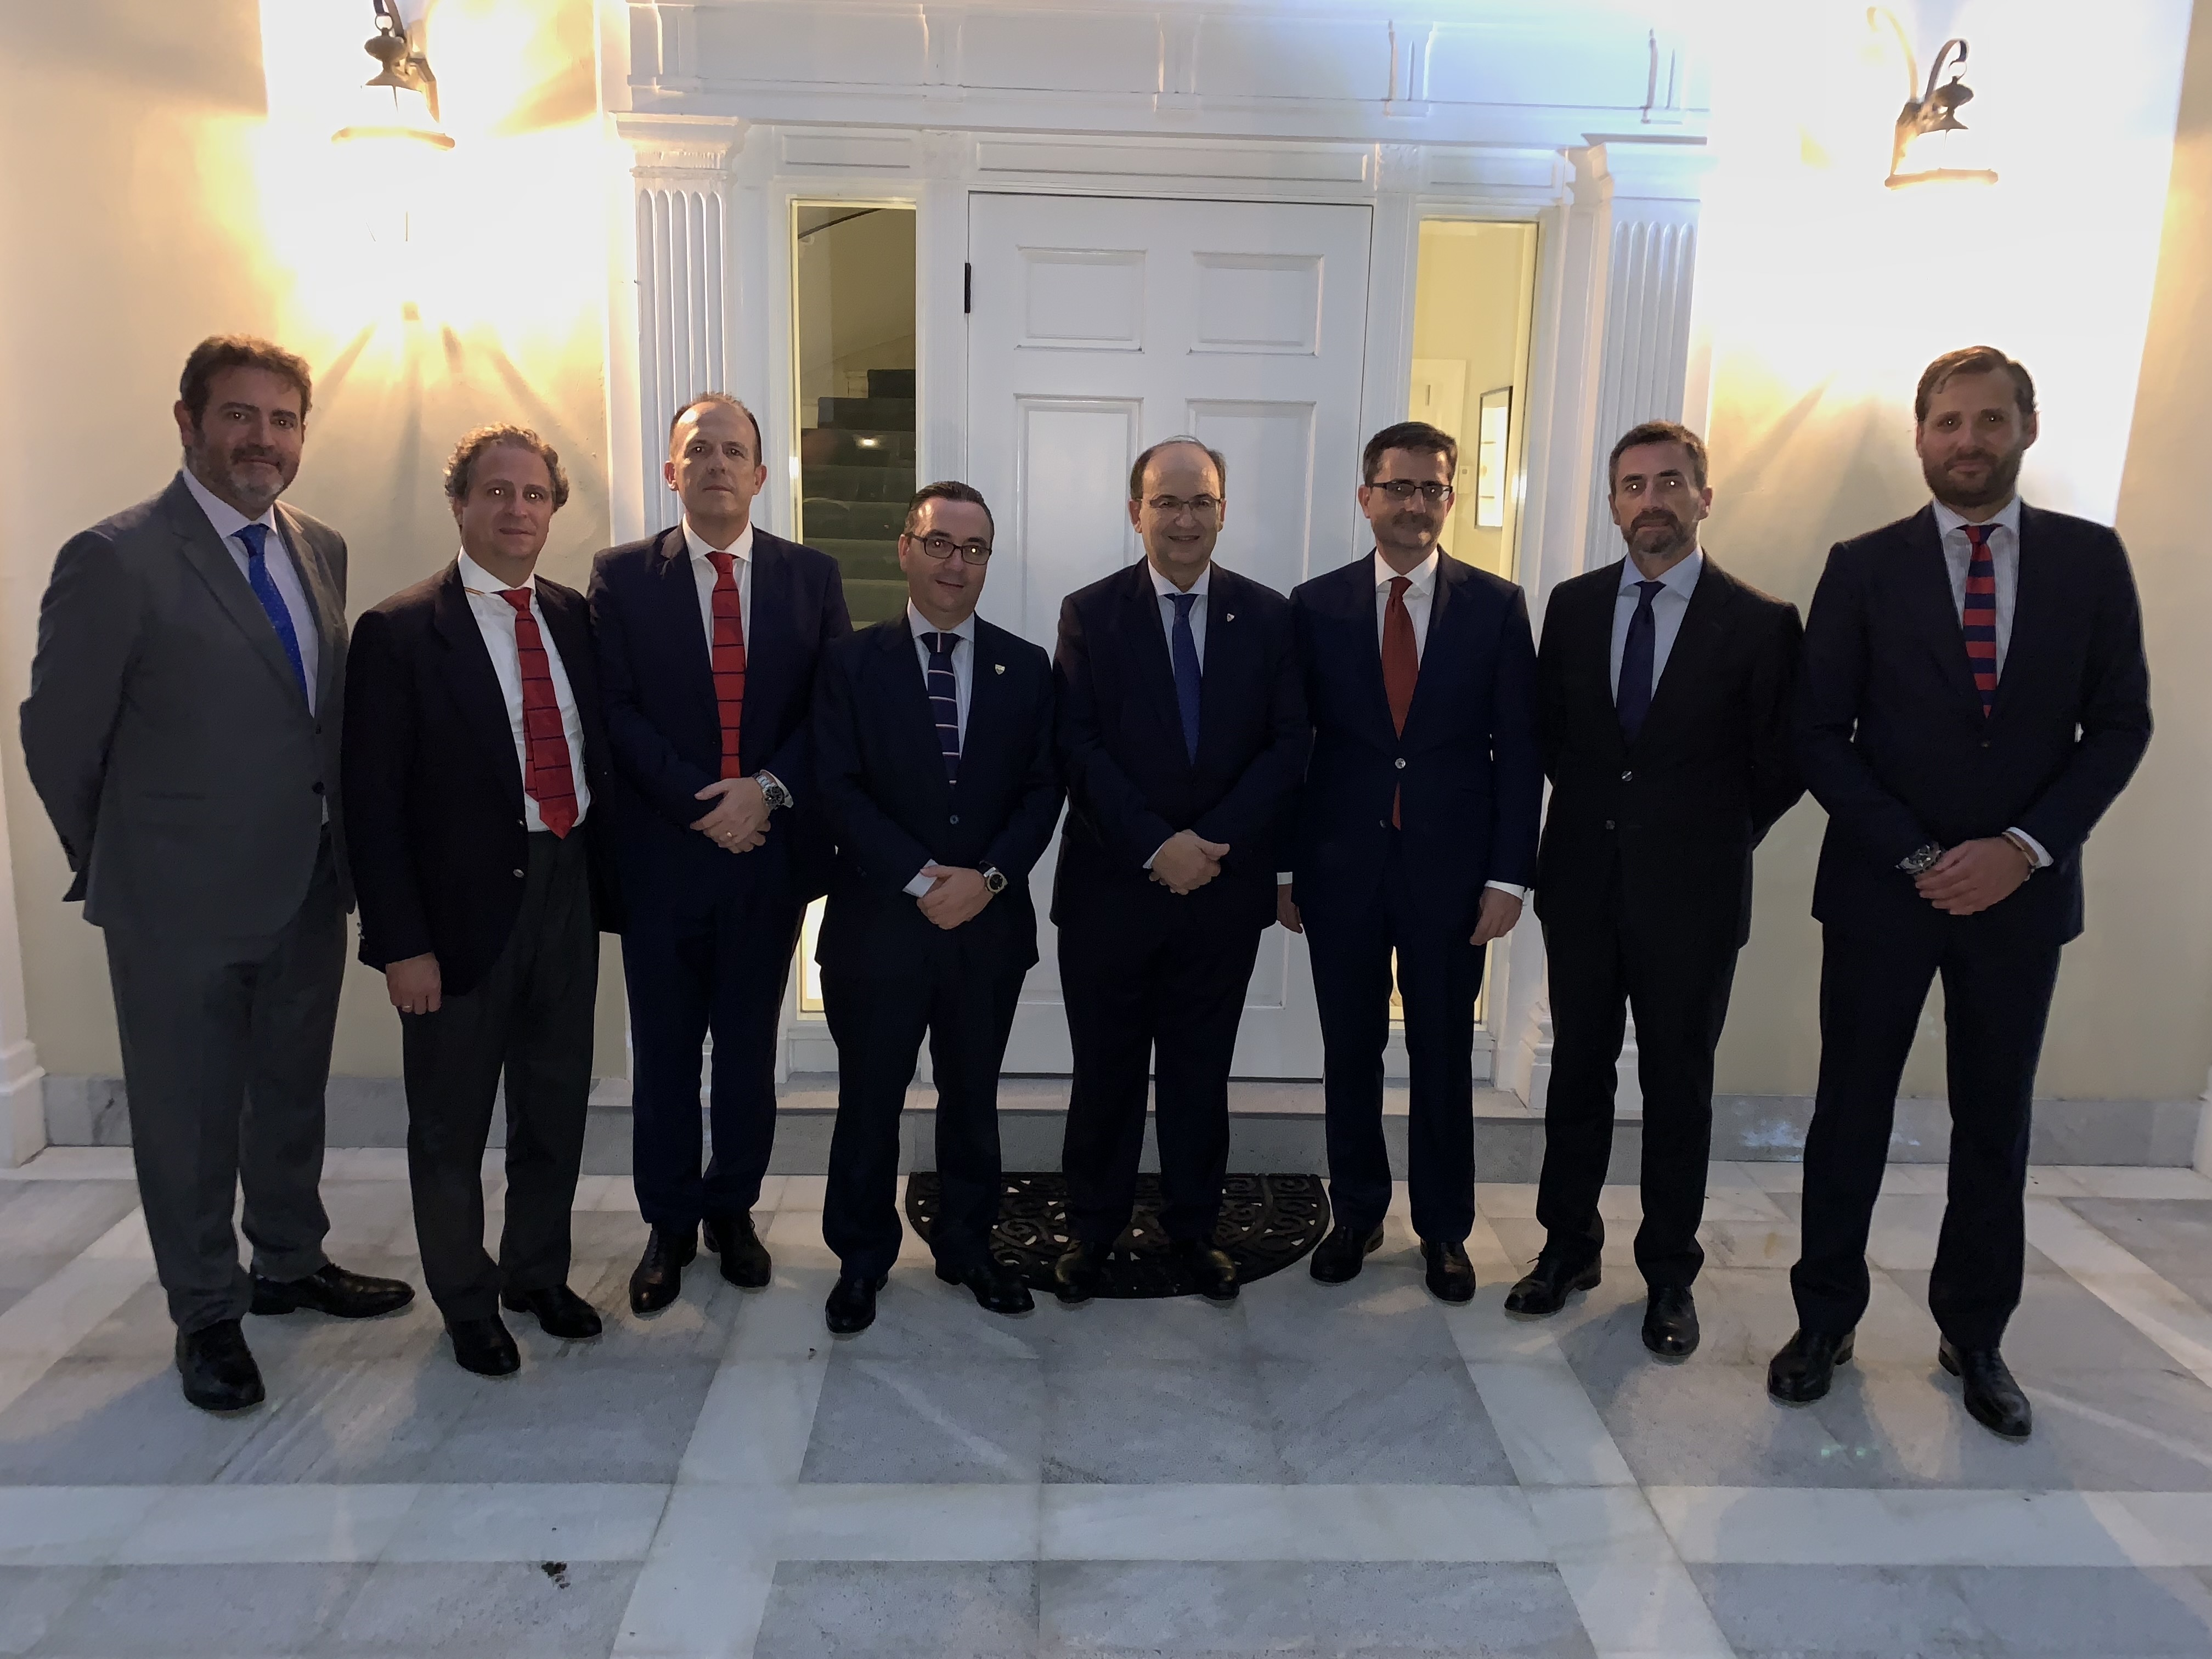 The delegation of Sevilla in Spain's consulate in Miami 